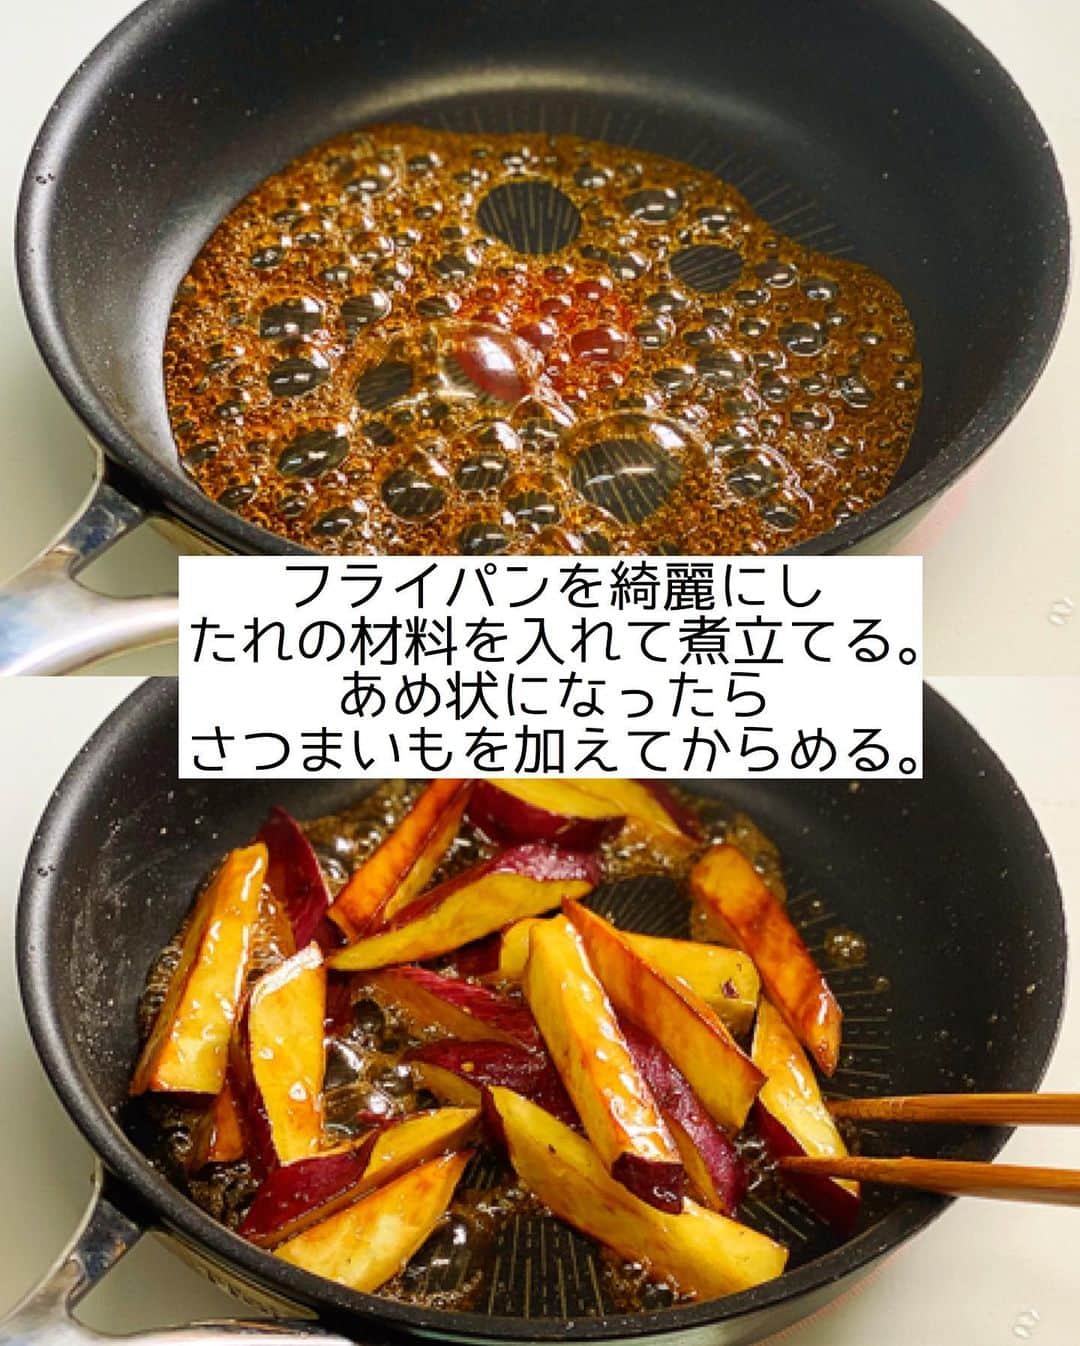 Mizuki【料理ブロガー・簡単レシピ】さんのインスタグラム写真 - (Mizuki【料理ブロガー・簡単レシピ】Instagram)「・ 【#レシピ 】ーーーーーー 油大3！焼き大学芋  (インスタライブレシピ) ーーーーーーーーーーーー ⁡ 　 ⁡ おはようございます(*^^*) ⁡ 昨日はライブ配信をご覧いただき ありがとうございました✨ 今日はその中で作らせていただいた \ 焼き大学芋 / を テキストでご紹介します♩ ⁡ ⁡ 使用する油はたった大さじ3！ 棒状に切ったさつまいもを 焼いてたれをからめるだけの 超簡単レシピです(*´艸`) ⁡ 思い立ったらすぐに作れる手軽さで おやつにぴったりですよ〜♡ これからの季節に よかったらお試し下さいね(*^^*) ⁡ ※［さつまいもの甘辛煮🍠］は 後日アップさせていただきます🙇‍♀️ ⁡ ⁡ ⁡ ＿＿＿＿＿＿＿＿＿＿＿＿＿＿＿＿＿＿＿＿＿ 【作りやすい量】 さつまいも...1本(200g) サラダ油...大3 ●みりん...大2 ●砂糖...大1.5 ●醤油...小2/3 (あれば)黒ごま...適量 ⁡ 1.さつまいもは斜め1.5cm幅に切ってから、縦1cm幅の棒状に切り、水に5分晒して水気を切る。 2.フライパンにサラダ油を中火で熱し、1を返しながら焼く(7分くらい)。さつまいもに火が通ったら引き上げて油を切る。 3.フライパンを綺麗にし、●を入れて煮立て、あめ状になったら2を加えてからめる。 4.薄く油(分量外)を塗ったバットに広げ、熱いうちに黒ごまを振る。 ￣￣￣￣￣￣￣￣￣￣￣￣￣￣￣￣￣￣￣￣￣ ⁡ ⁡ ⁡ 《ポイント》 ♦︎さつまいもの大きさ(切り方)により焼き時間は加減して下さい♩ ♦︎工程3のたれの状態は昨日のインスタライブ動画をご覧いただくとわかりやすいかと思います♩ →動画はIGTVに保存しております☆ (''13分くらい''から大学芋の調理動画です🍠) ⁡ ⁡ ⁡ ⁡ ⁡ ⁡ ⁡ \ 新刊予約開始しました /(9月24日発売) ⁡ 🔹🔹🔹🔹🔹🔹🔹🔹🔹🔹🔹🔹 今日のごはんこれに決まり！ #Mizukiのレシピノート 決定版 500品 🔹🔹🔹🔹🔹🔹🔹🔹🔹🔹🔹🔹 ⁡ 総レシピ6000点の中からレシピを厳選！ まさかの【500レシピ掲載】しました⭐️ (もはや辞典...) ⁡ 肉や魚のメインおかずはもちろん 副菜、丼、麺、スープ、お菓子 ハレの日のレシピ、鍋のレシピまで 全てこの一冊で完結！！ ⁡ ⁡ 🎁新刊予約でエプロンが当たる🎁 プレゼントキャンペーン実施中 ￣￣￣￣￣￣￣￣￣￣￣￣￣￣￣￣￣￣￣￣￣ 【応募方法】 ❶1枚目に表紙画像 2枚目にAmazonで予約したことがわかる画像 (どちらもスクショでOK)を貼りつける。 ❷ハッシュタグ【#Mizukiのレシピノート 】 をつけて投稿！ ￣￣￣￣￣￣￣￣￣￣￣￣￣￣￣￣￣￣￣￣￣￣ ⁡ ⁡ ⁡ ⁡ ⁡ ＿＿＿＿＿＿＿＿＿＿＿＿＿＿＿＿ 🟥YouTube 料理動画配信中🟥 ￣￣￣￣￣￣￣￣￣￣￣￣￣￣￣￣ 料理とお菓子の簡単レシピを ご紹介しています☺️💓 ⁡ 【奇跡のキッチン】で検索🔍 (ハイライトからも飛べます✨) ￣￣￣￣￣￣￣￣￣￣￣￣￣￣￣￣ ⁡ ⁡ ⁡ ＿＿＿＿＿＿＿＿＿＿＿＿＿＿＿＿ 🔶🔶recipe book🔶🔶 ￣￣￣￣￣￣￣￣￣￣￣￣￣￣￣￣ ホケミレシピの決定版♩ \はじめてでも失敗しない/ 📙#ホットケーキミックスのお菓子 ⁡ NHKまる得マガジンテキスト☆ #ホットケーキミックス で ⁡ 📗絶品おやつ&意外なランチ ⁡ しんどくない献立、考えました♩ \𝟣𝟧分でいただきます/ 📕#Mizukiの2品献立 ⁡ 和食をもっとカジュアルに♩ \毎日のごはんがラクになる/ 📘#Mizukiの今どき和食  ＿＿＿＿＿＿＿＿＿＿＿＿＿＿＿＿＿ ⁡ ⁡ ⁡ ⁡ #焼き大学芋m #大学芋 #さつまいも #おやつ #揚げない #mizuki #簡単レシピ #時短レシピ #節約レシピ #料理 #料理初心者  #時短ごはん #節約ごはん #フーディーテーブル #おうちごはん #デリスタグラマー #おうちごはんlover #料理好きな人と繋がりたい #写真好きな人と繋がりたい #foodpick#cooking#recipe #foodporn」8月23日 7時52分 - mizuki_31cafe